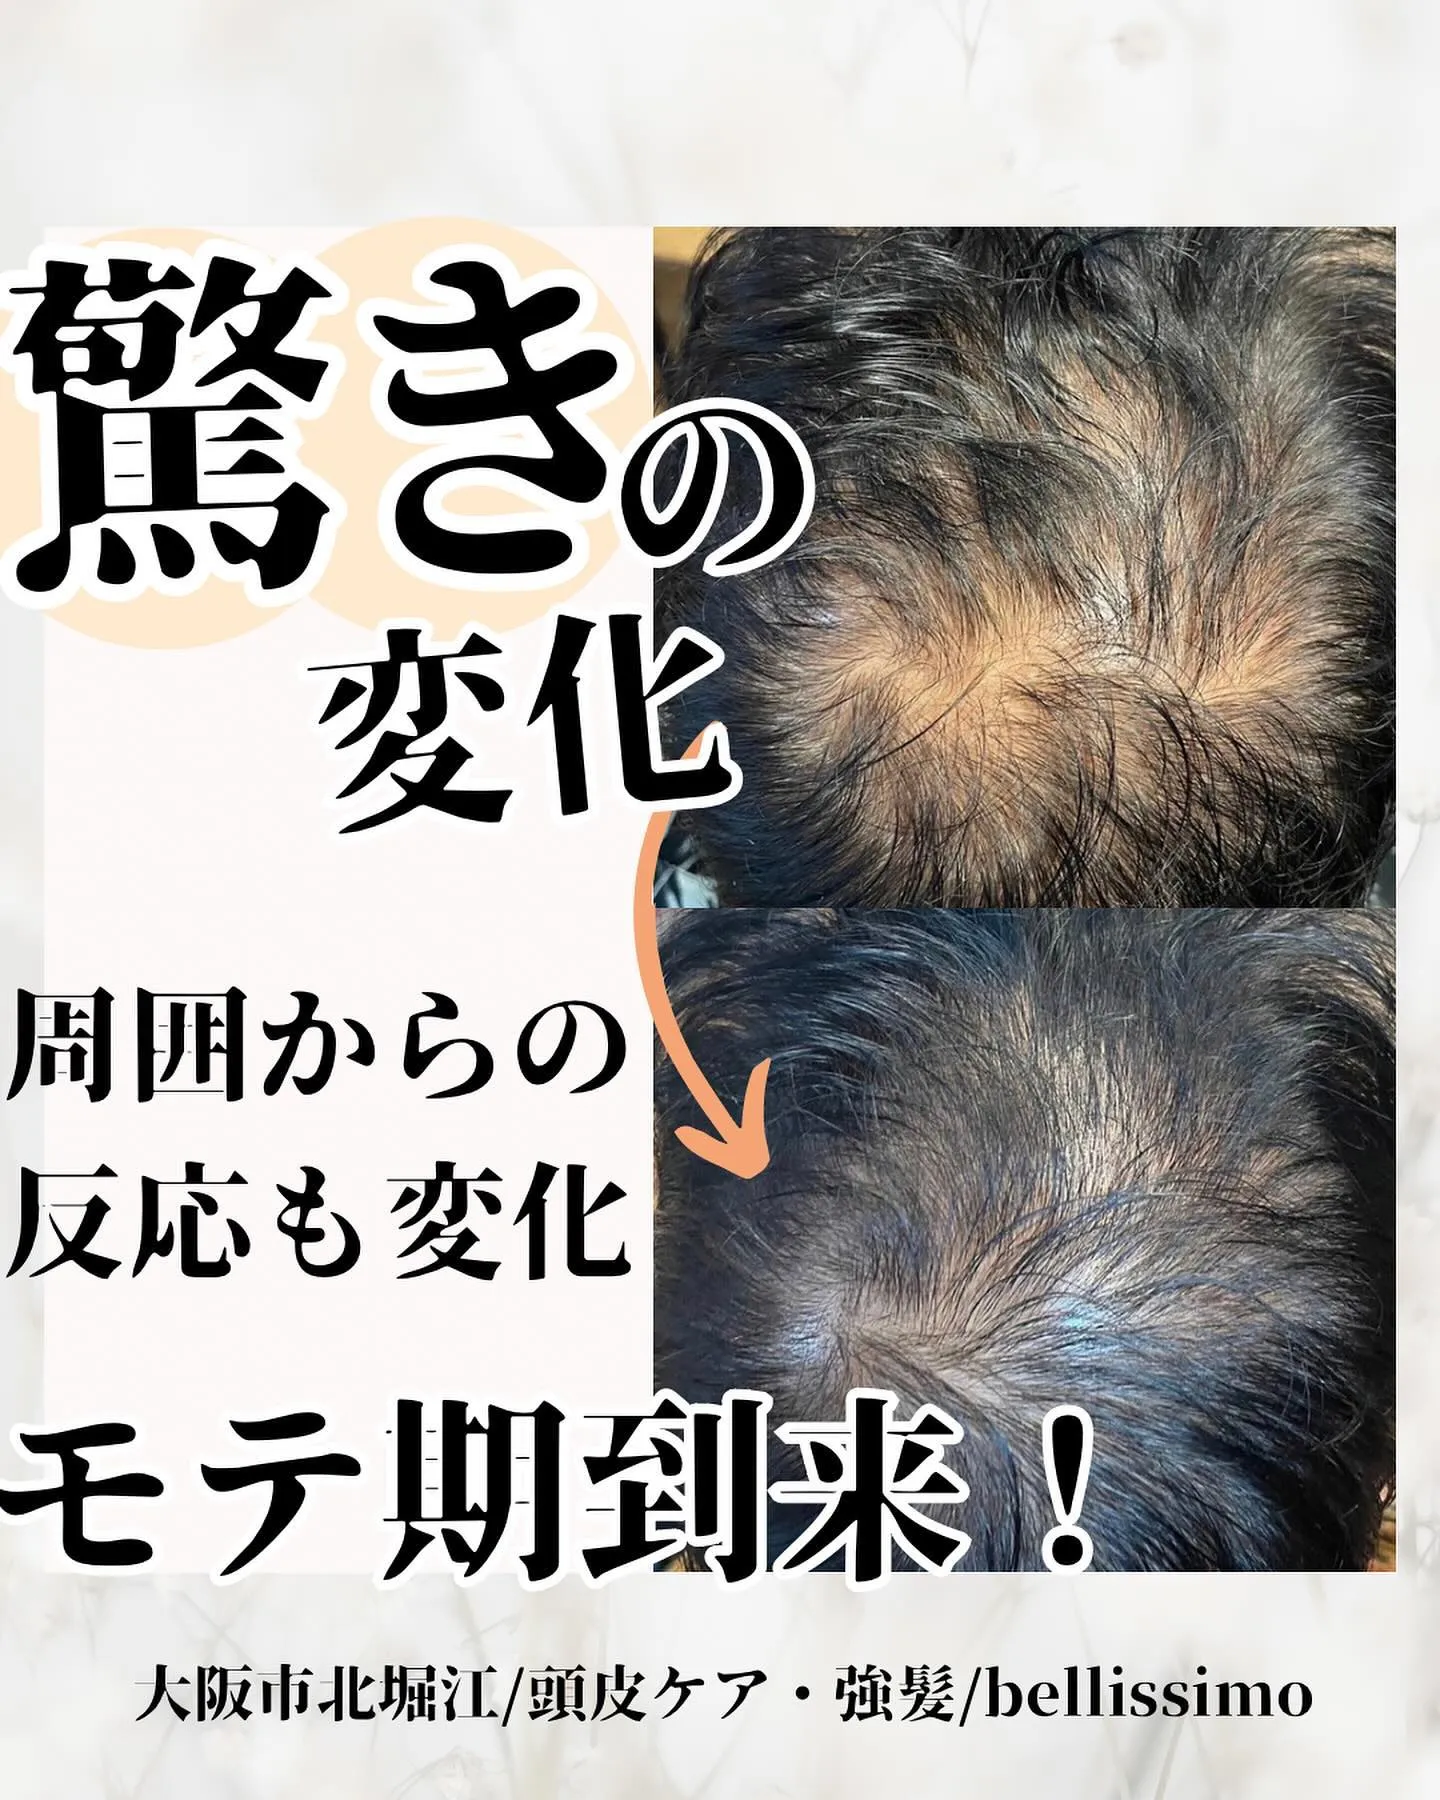 大阪市西区で頭皮ケア、薄毛改善ができるプライベートエステサロ...